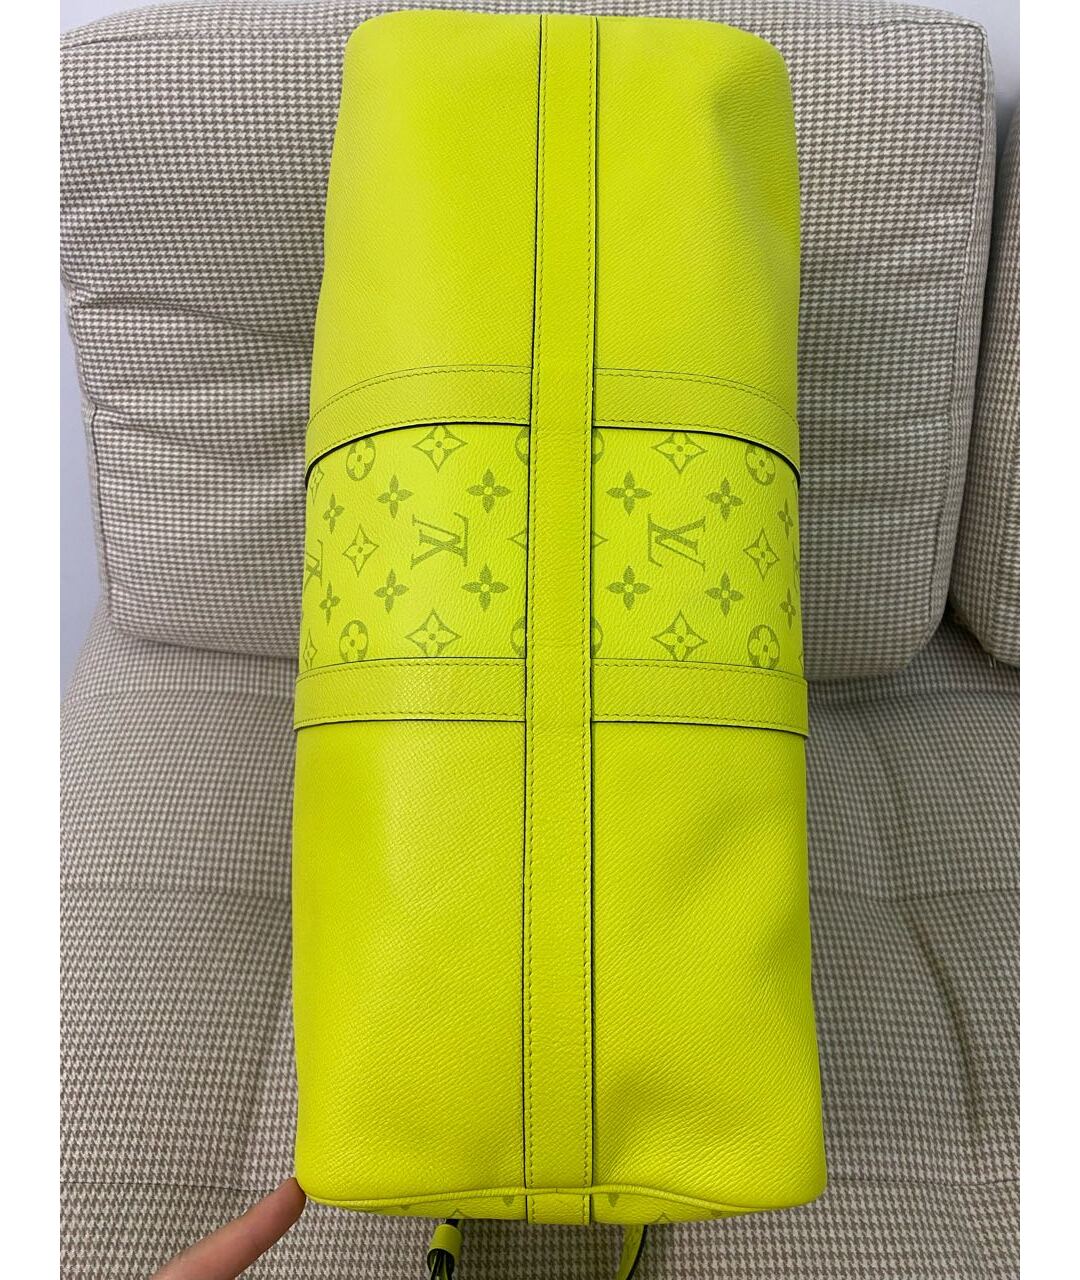 LOUIS VUITTON PRE-OWNED Желтый кожаный чемодан, фото 5